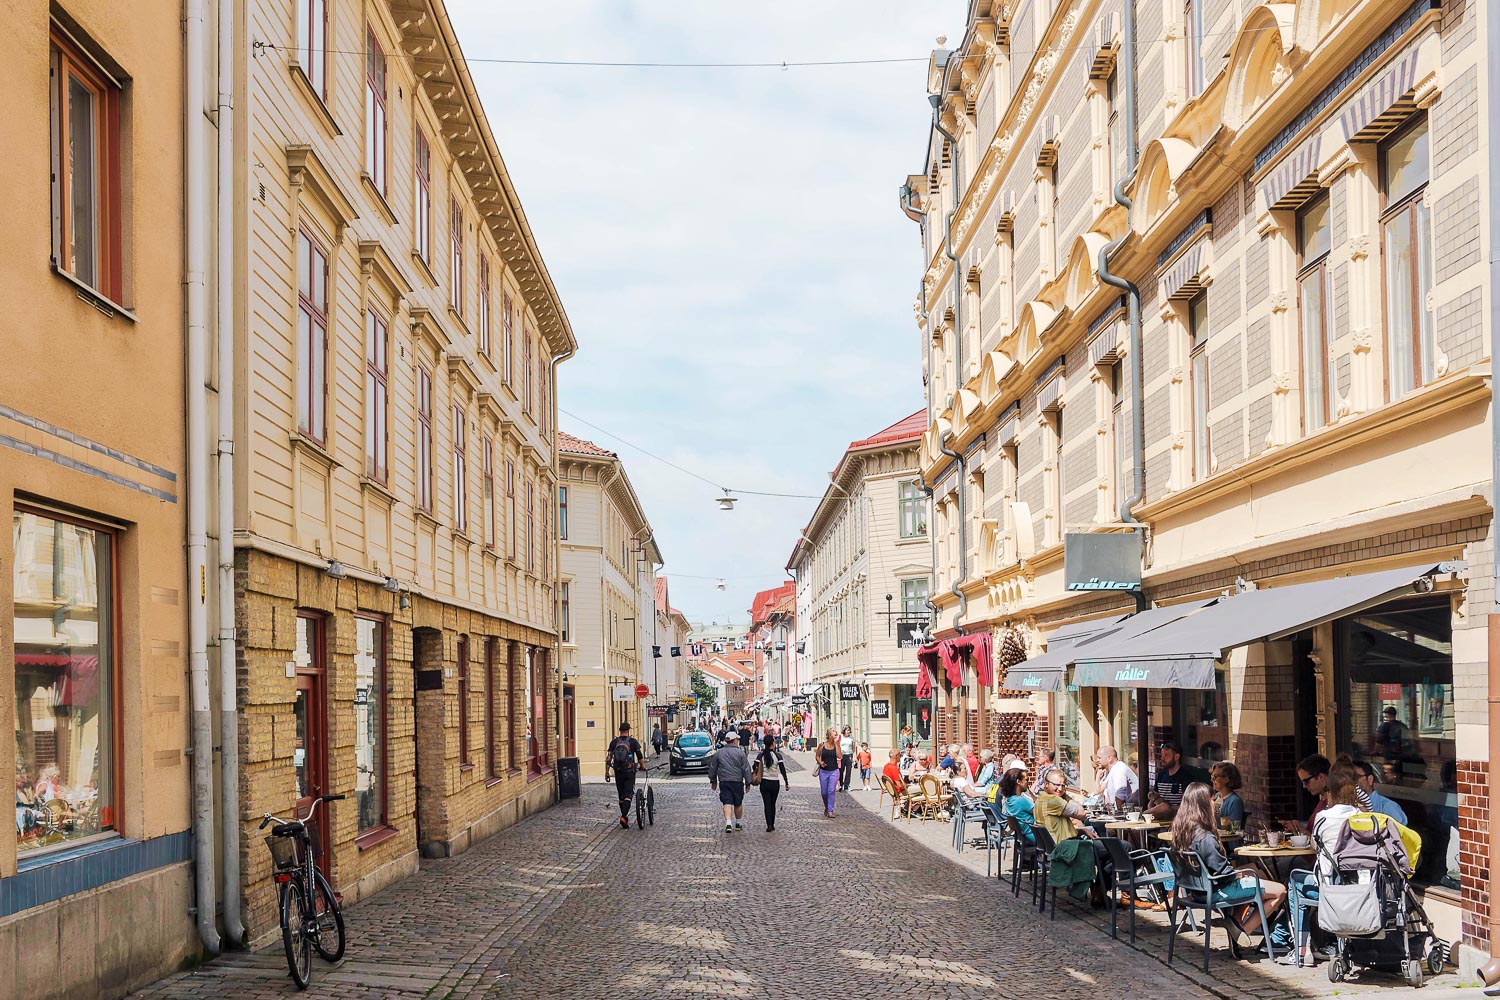 Stroll through Haga, Gothenburg's oldest neighborhood